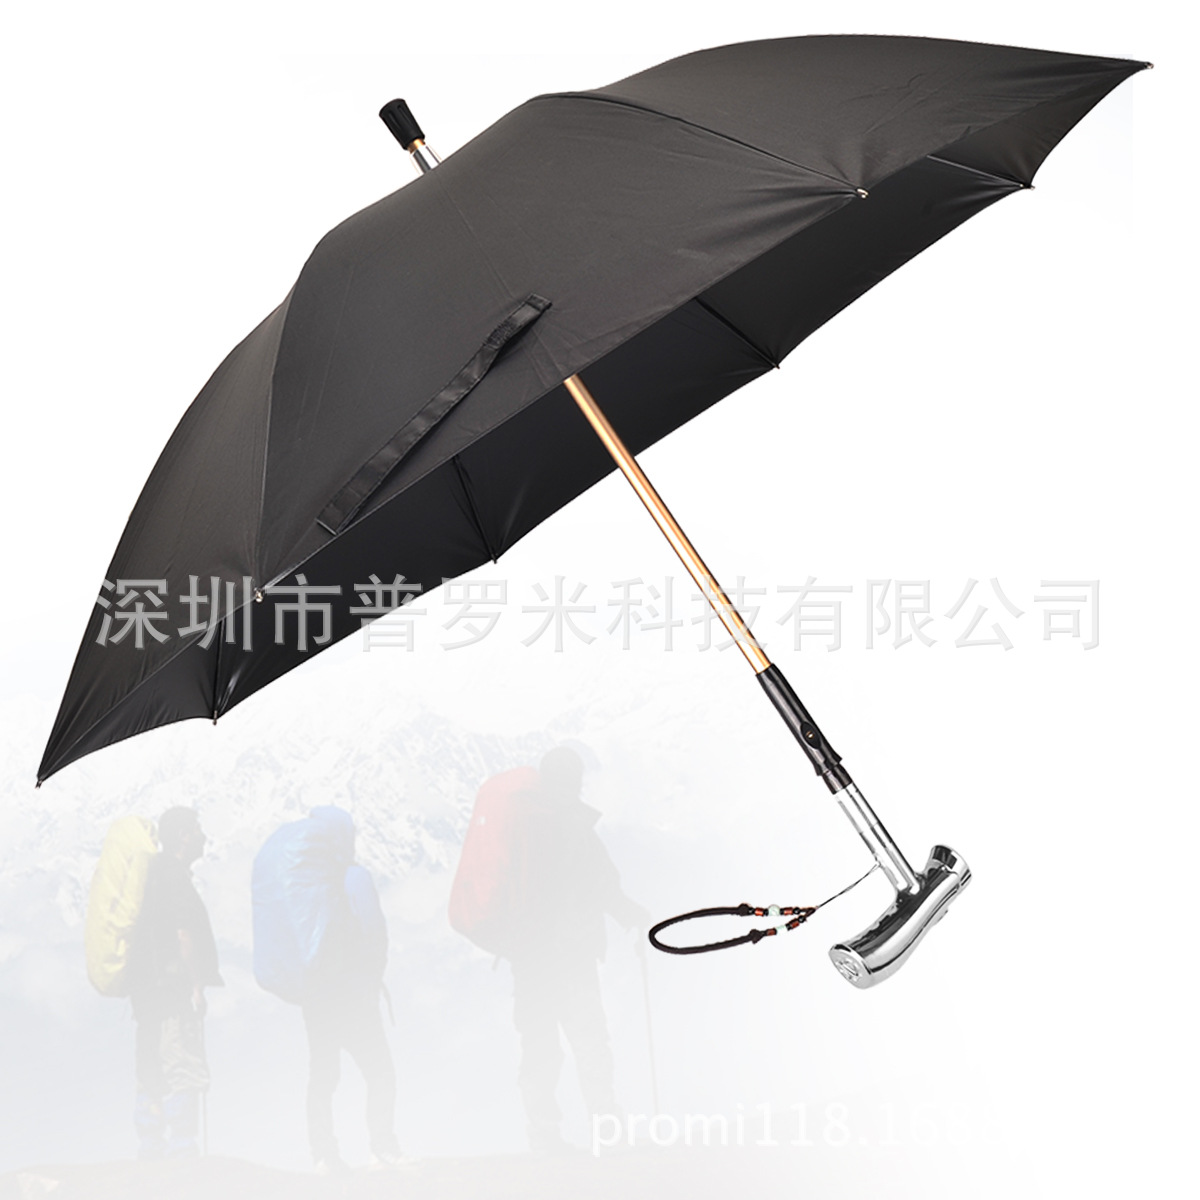 报警照明手摇发电 一伞多用 当天发货 登山保护伞多功能拐杖雨伞6